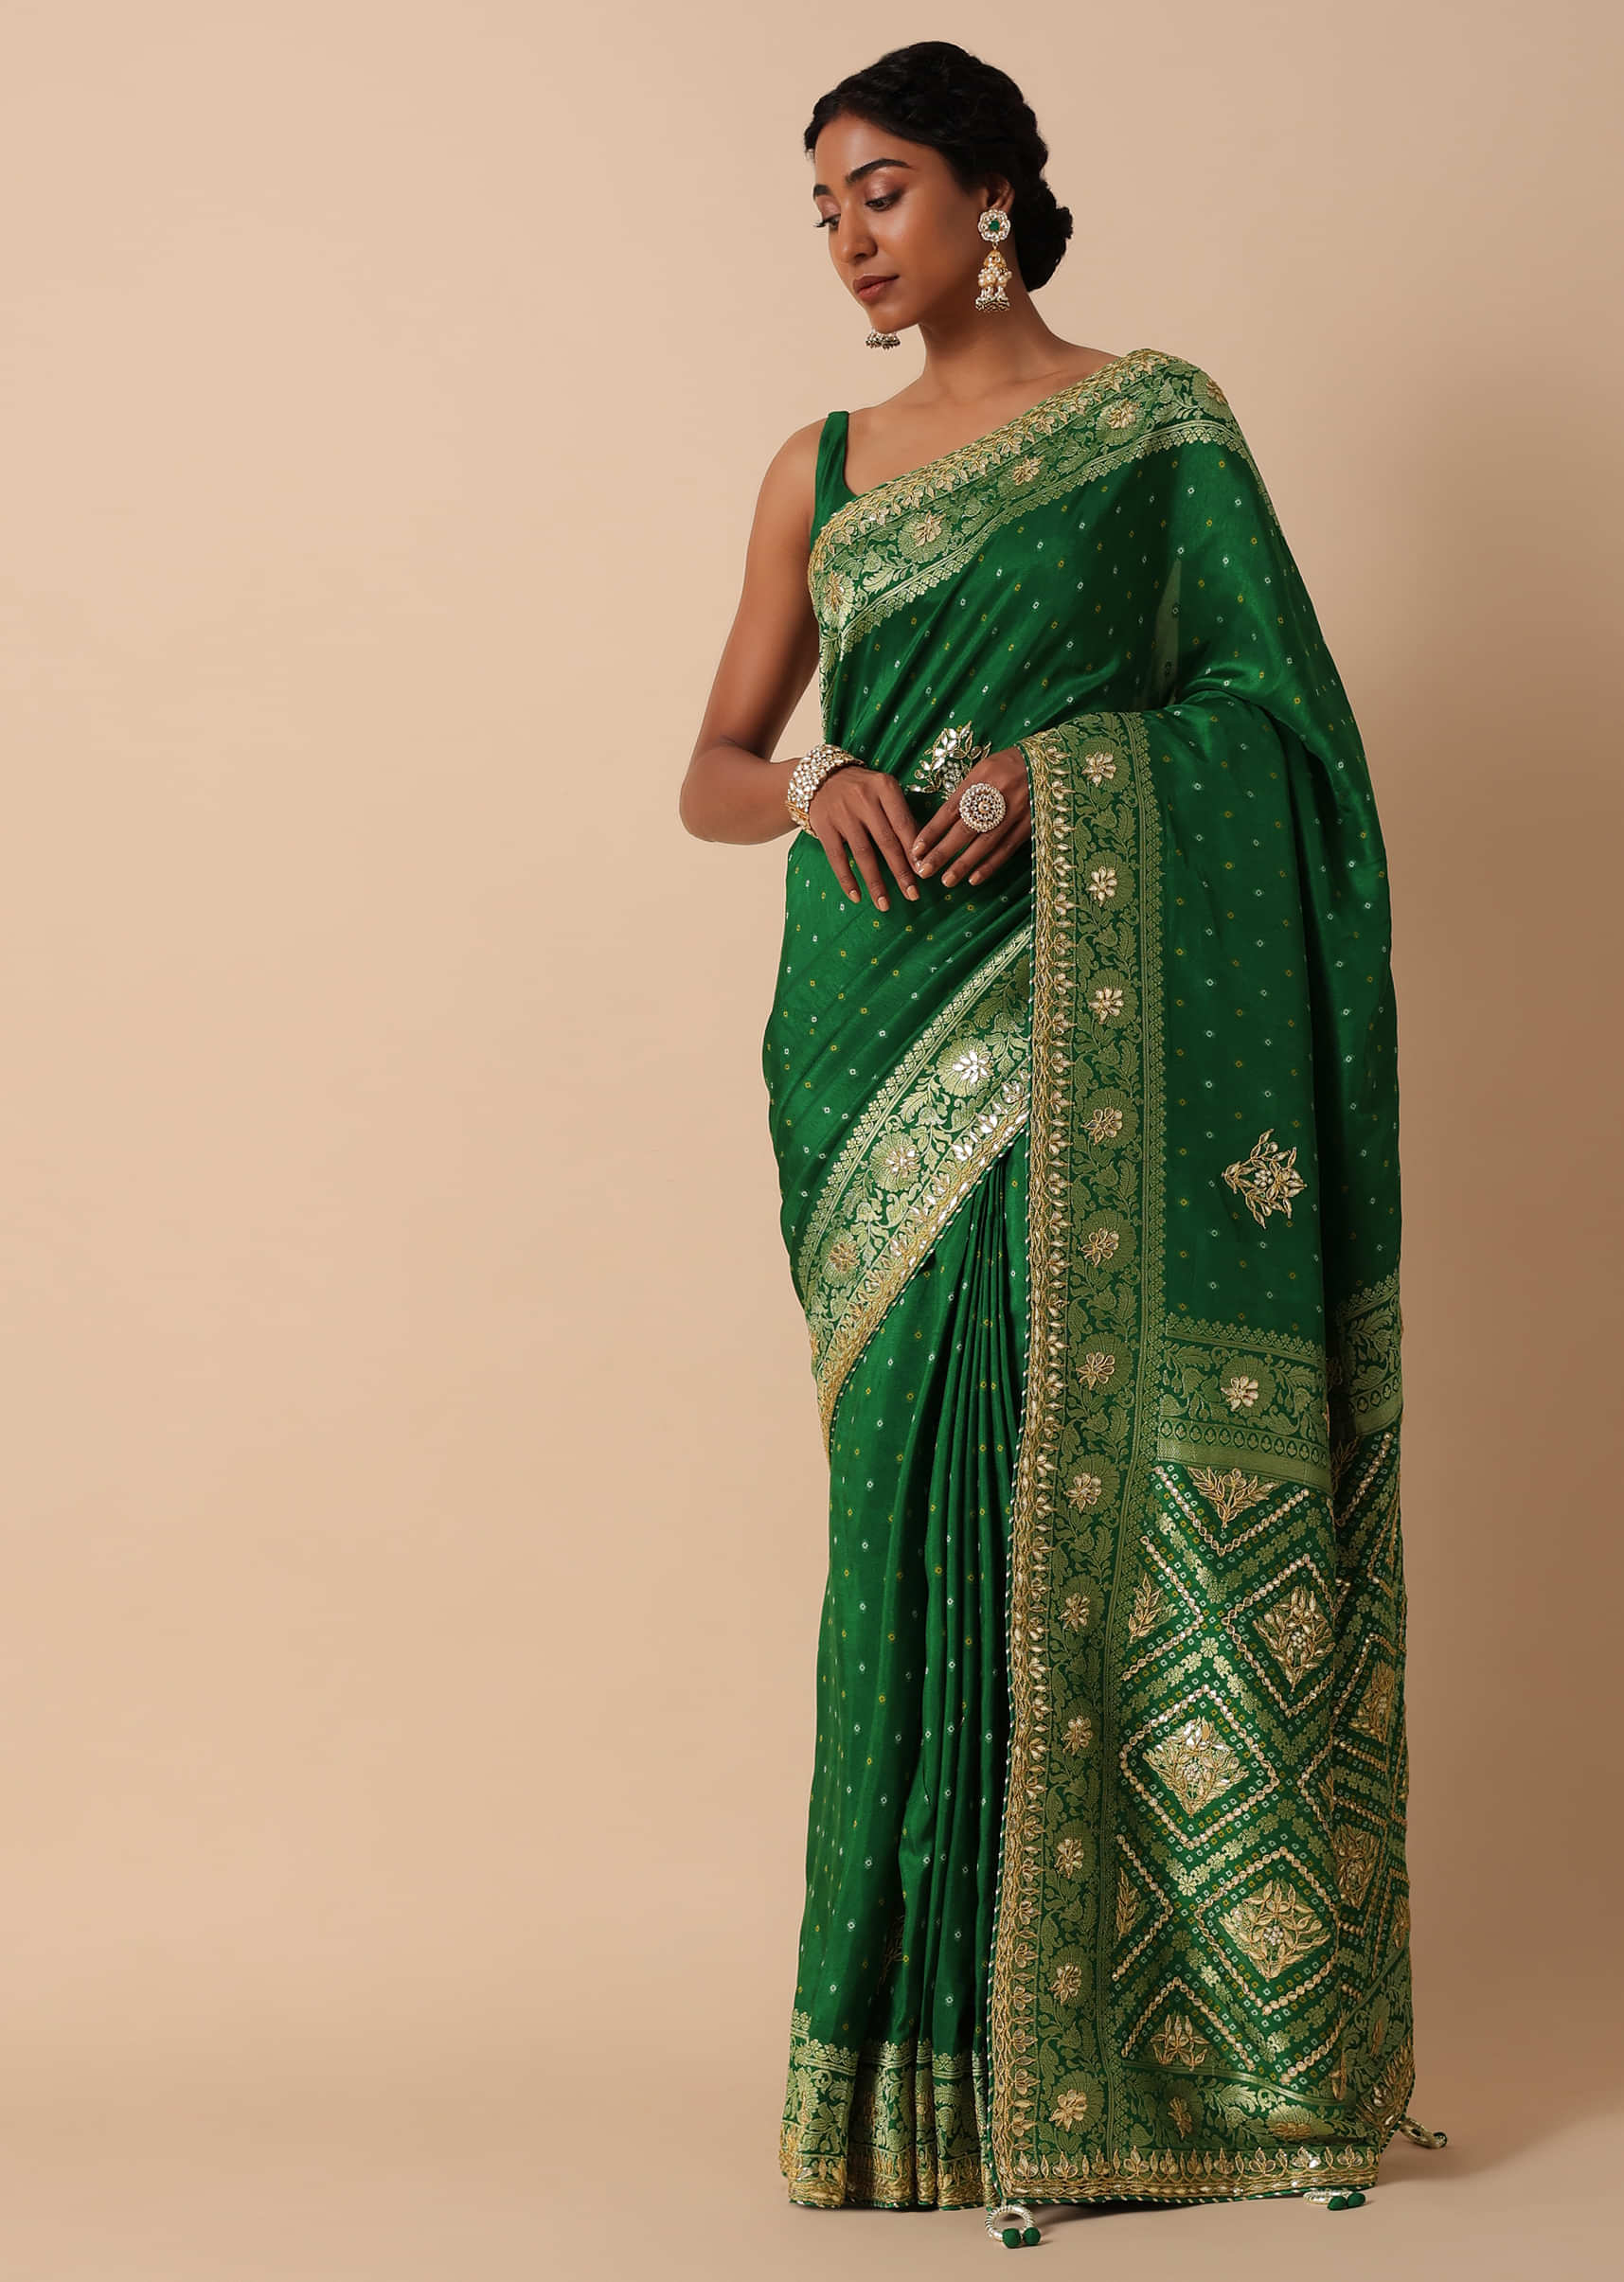 Black Banarasi Silk Saree, Indian Wedding Saree with Blouse | Sarees USA |  Sari with stitched Blouse | GIFT for HER | Sarees for women